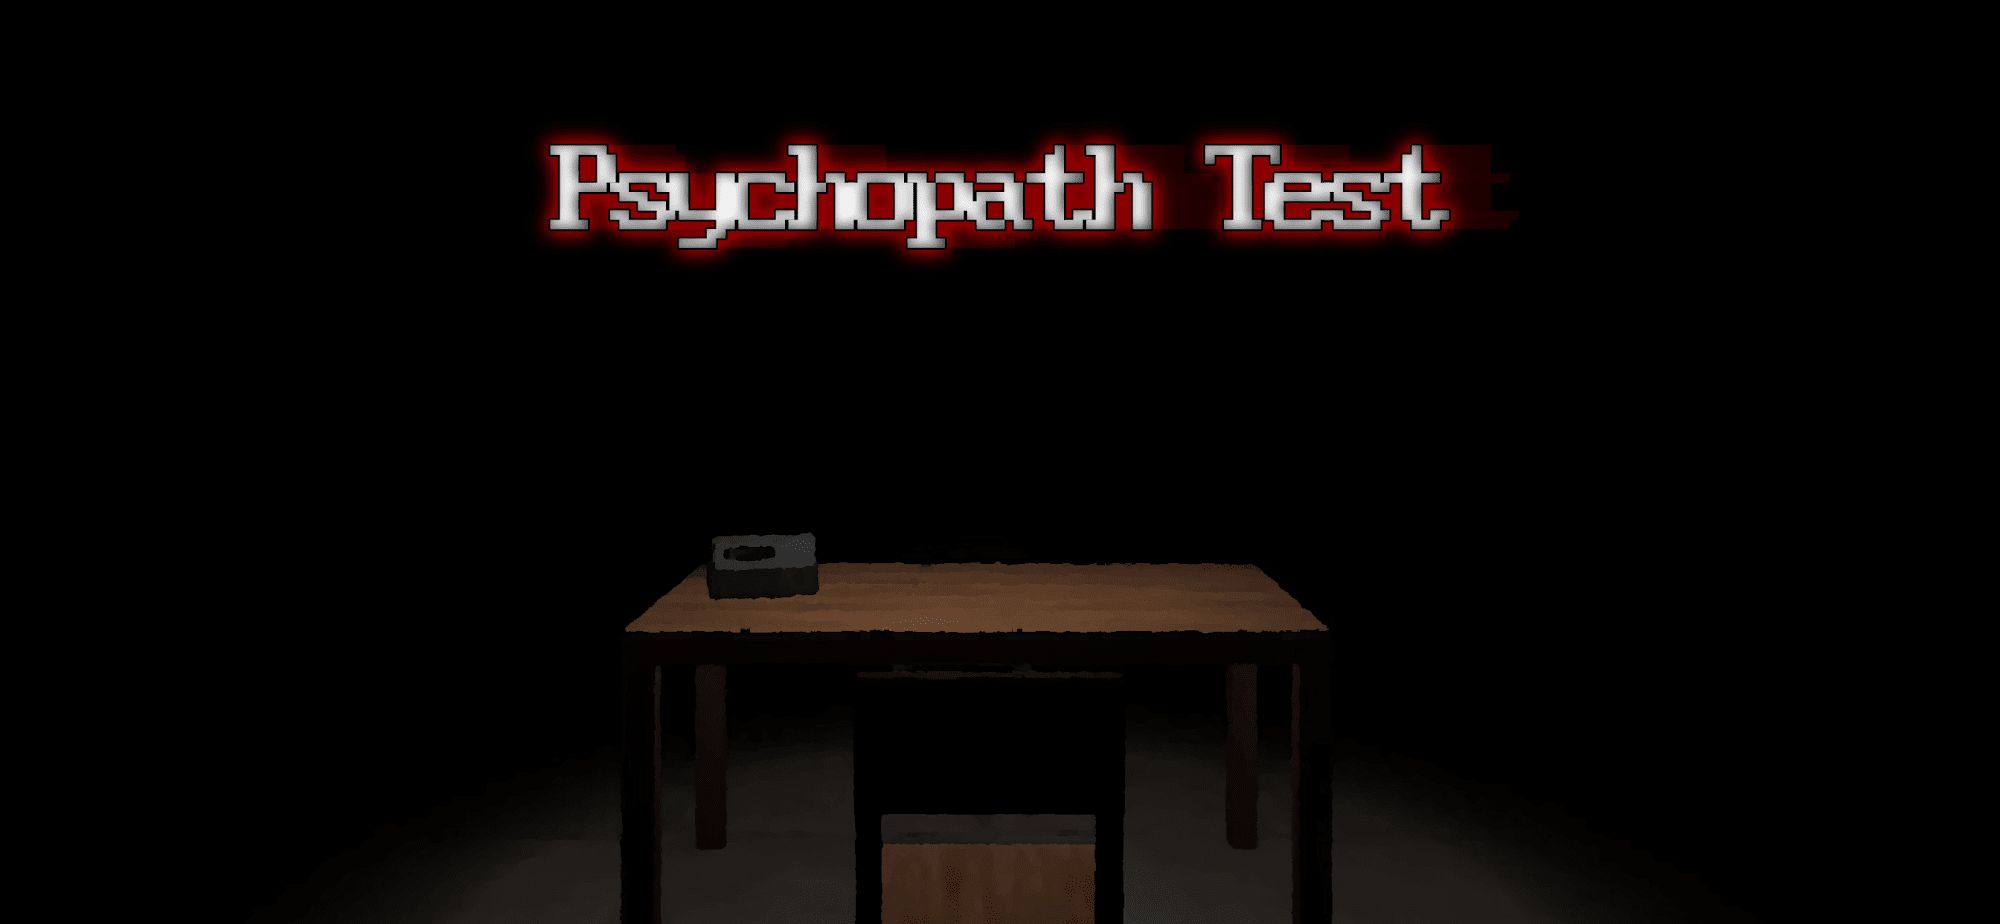 Download Psychopath Test für Android kostenlos.